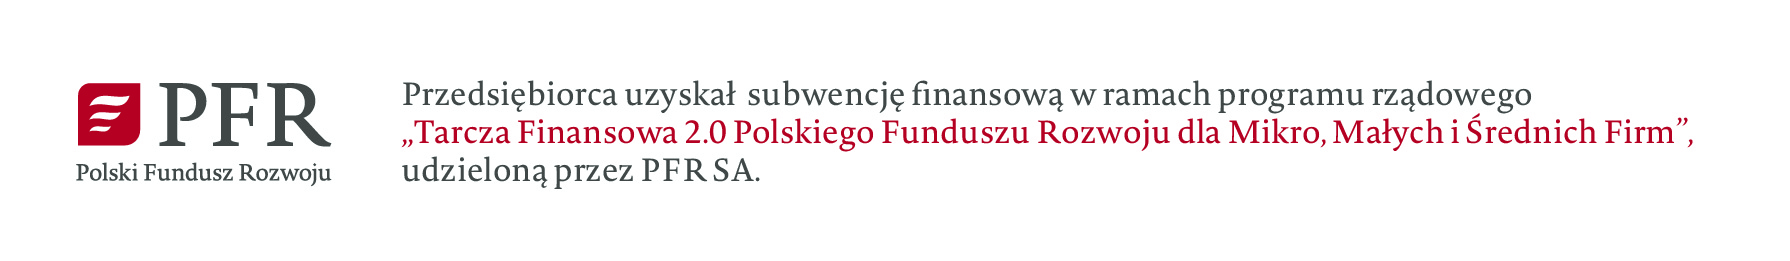 Przedsiębiorca uzyskał Subwencję Finansową w ramach programu rządowego "Tarcza Finansowa 2.0 Polskiego Funduszu Rozwoju dla Mikro, Małych i Średnich Firm" udzielaną przez PFR SA.